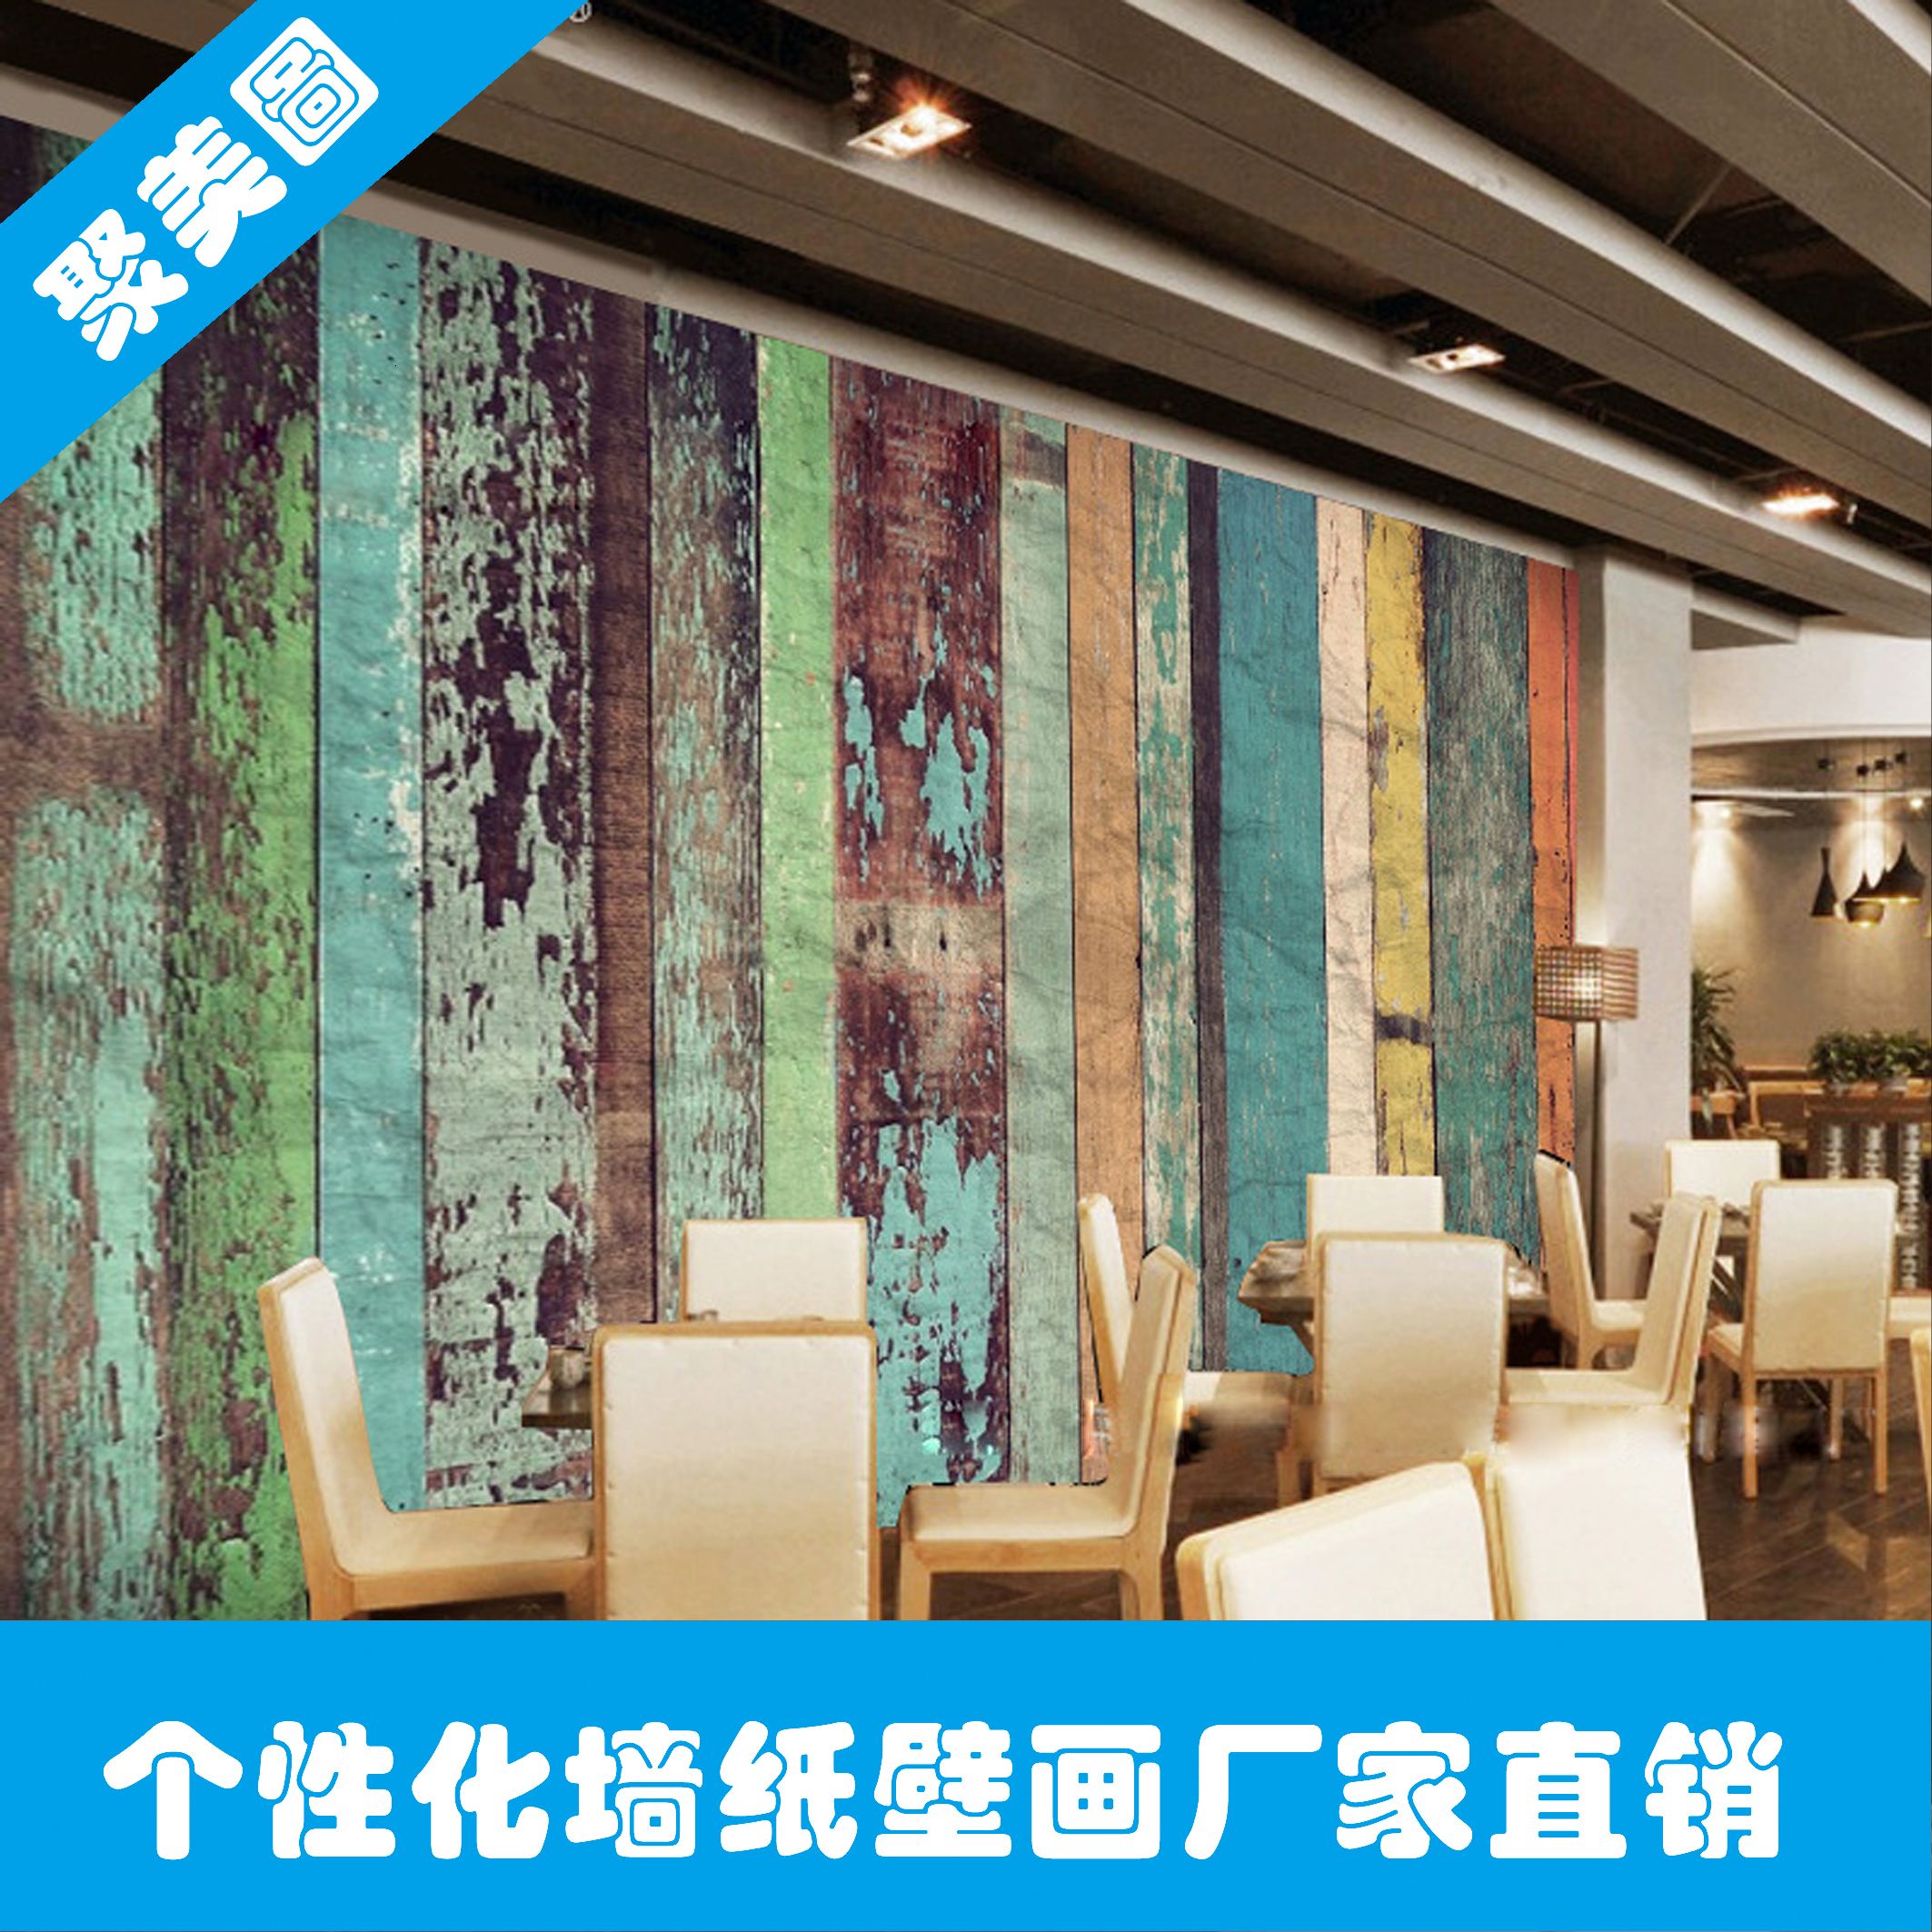 供应个性化墙纸墙贴彩色木板墙壁